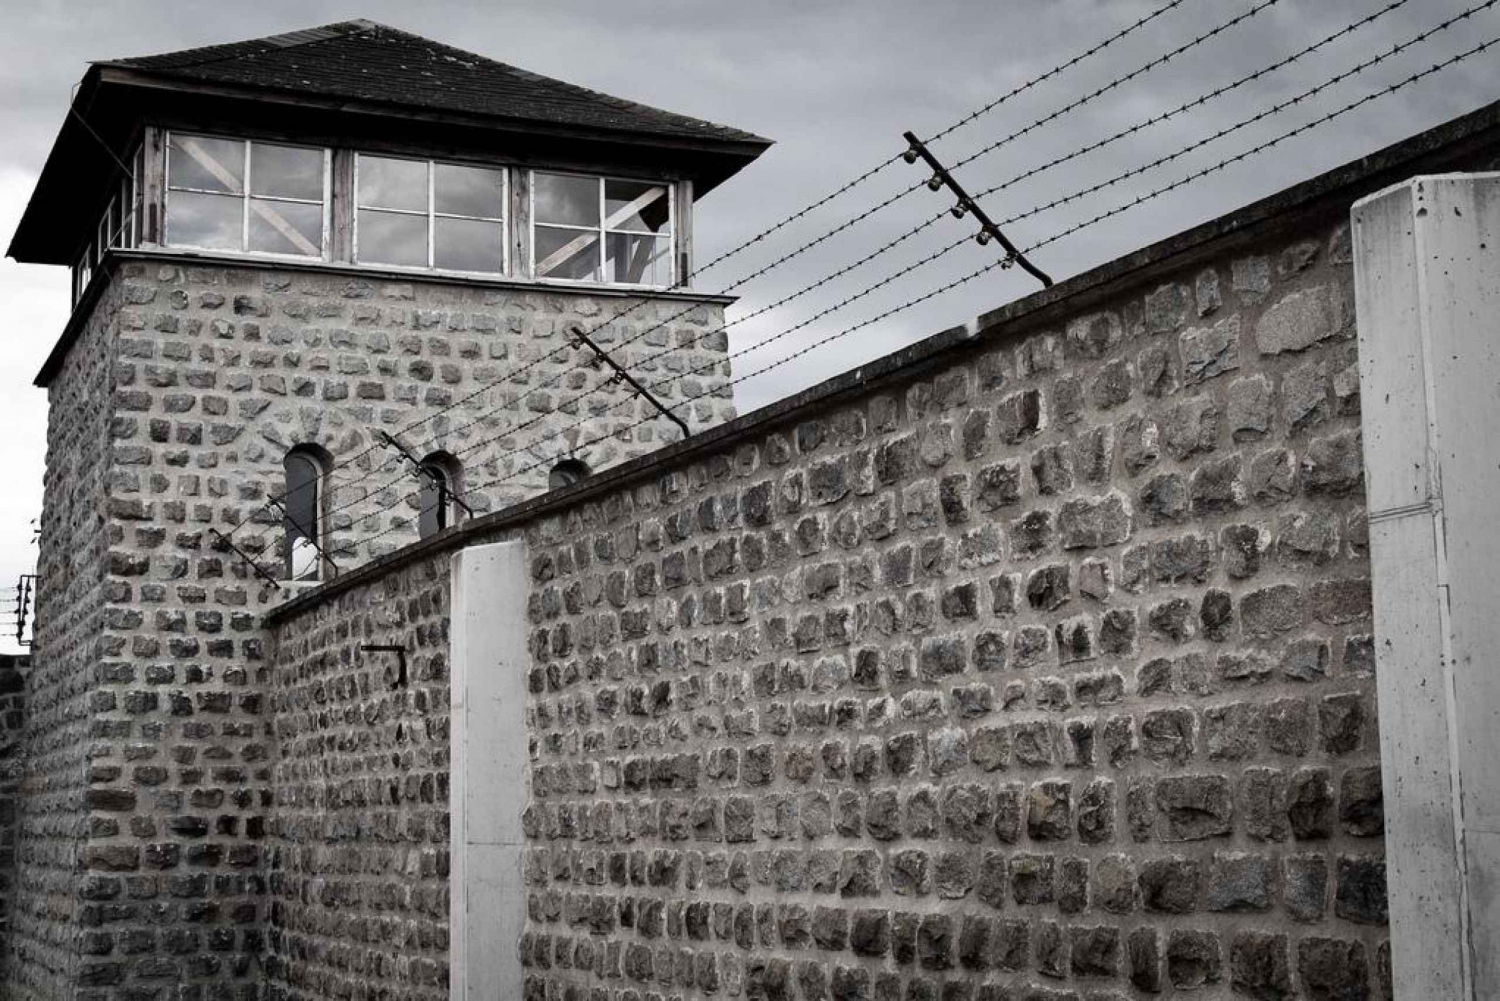 Wien: Dagstur til minnesmerket over konsentrasjonsleiren Mauthausen